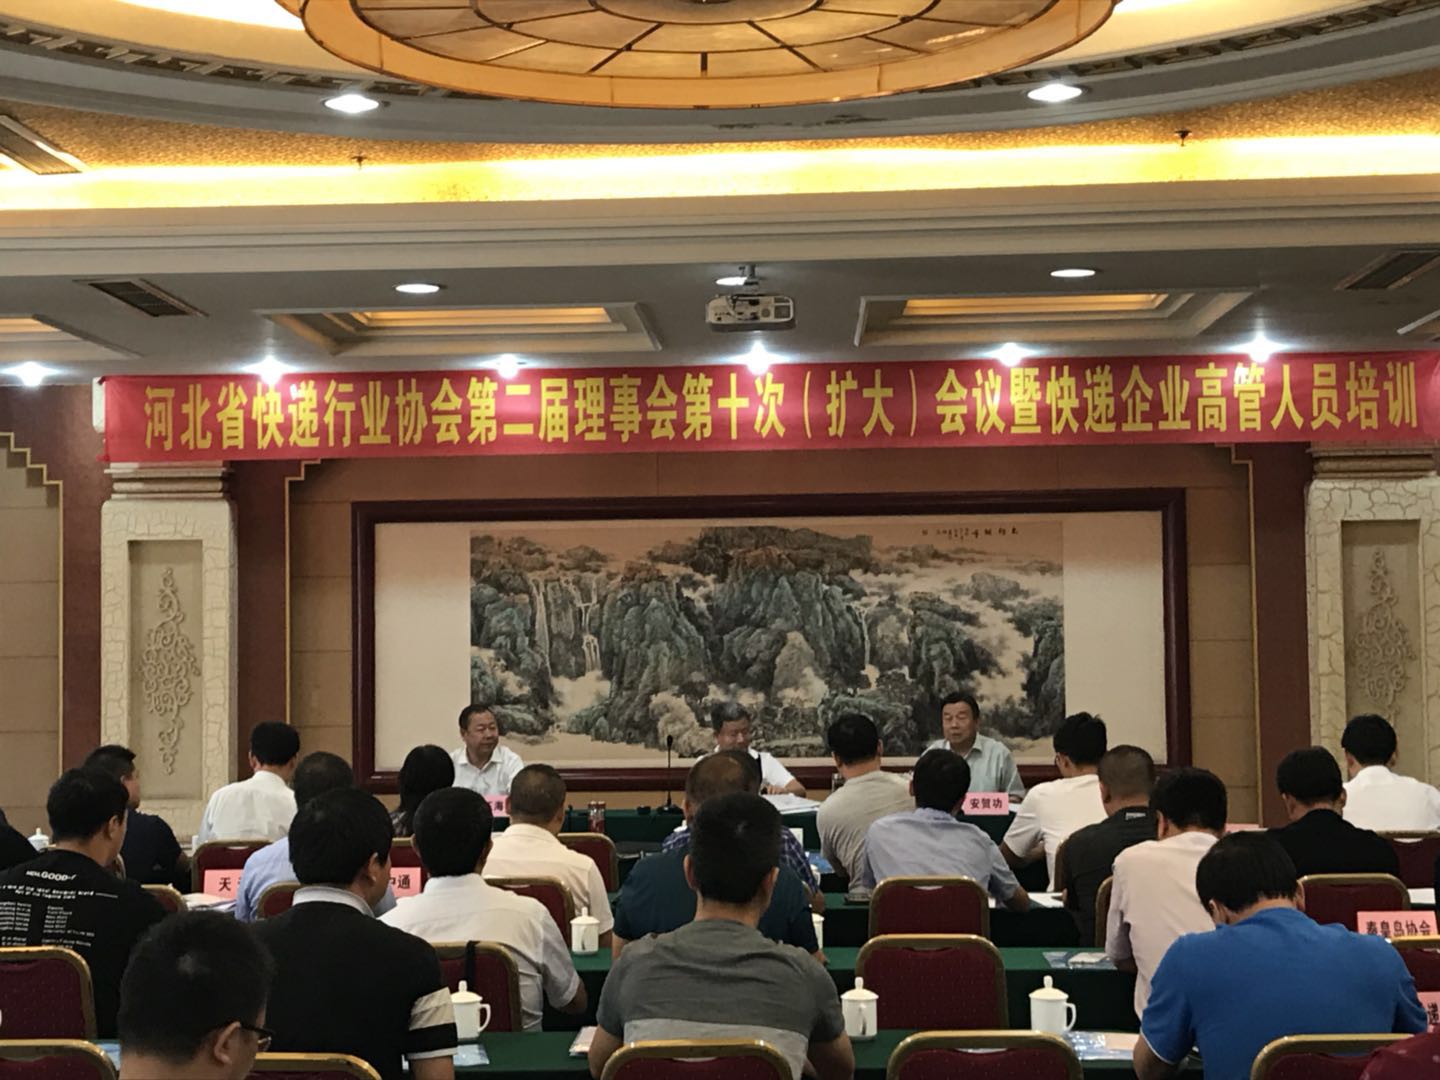 河北省快递行业协会 第二届理事会第十次（扩大）会议 暨快递企业高管人员培训班